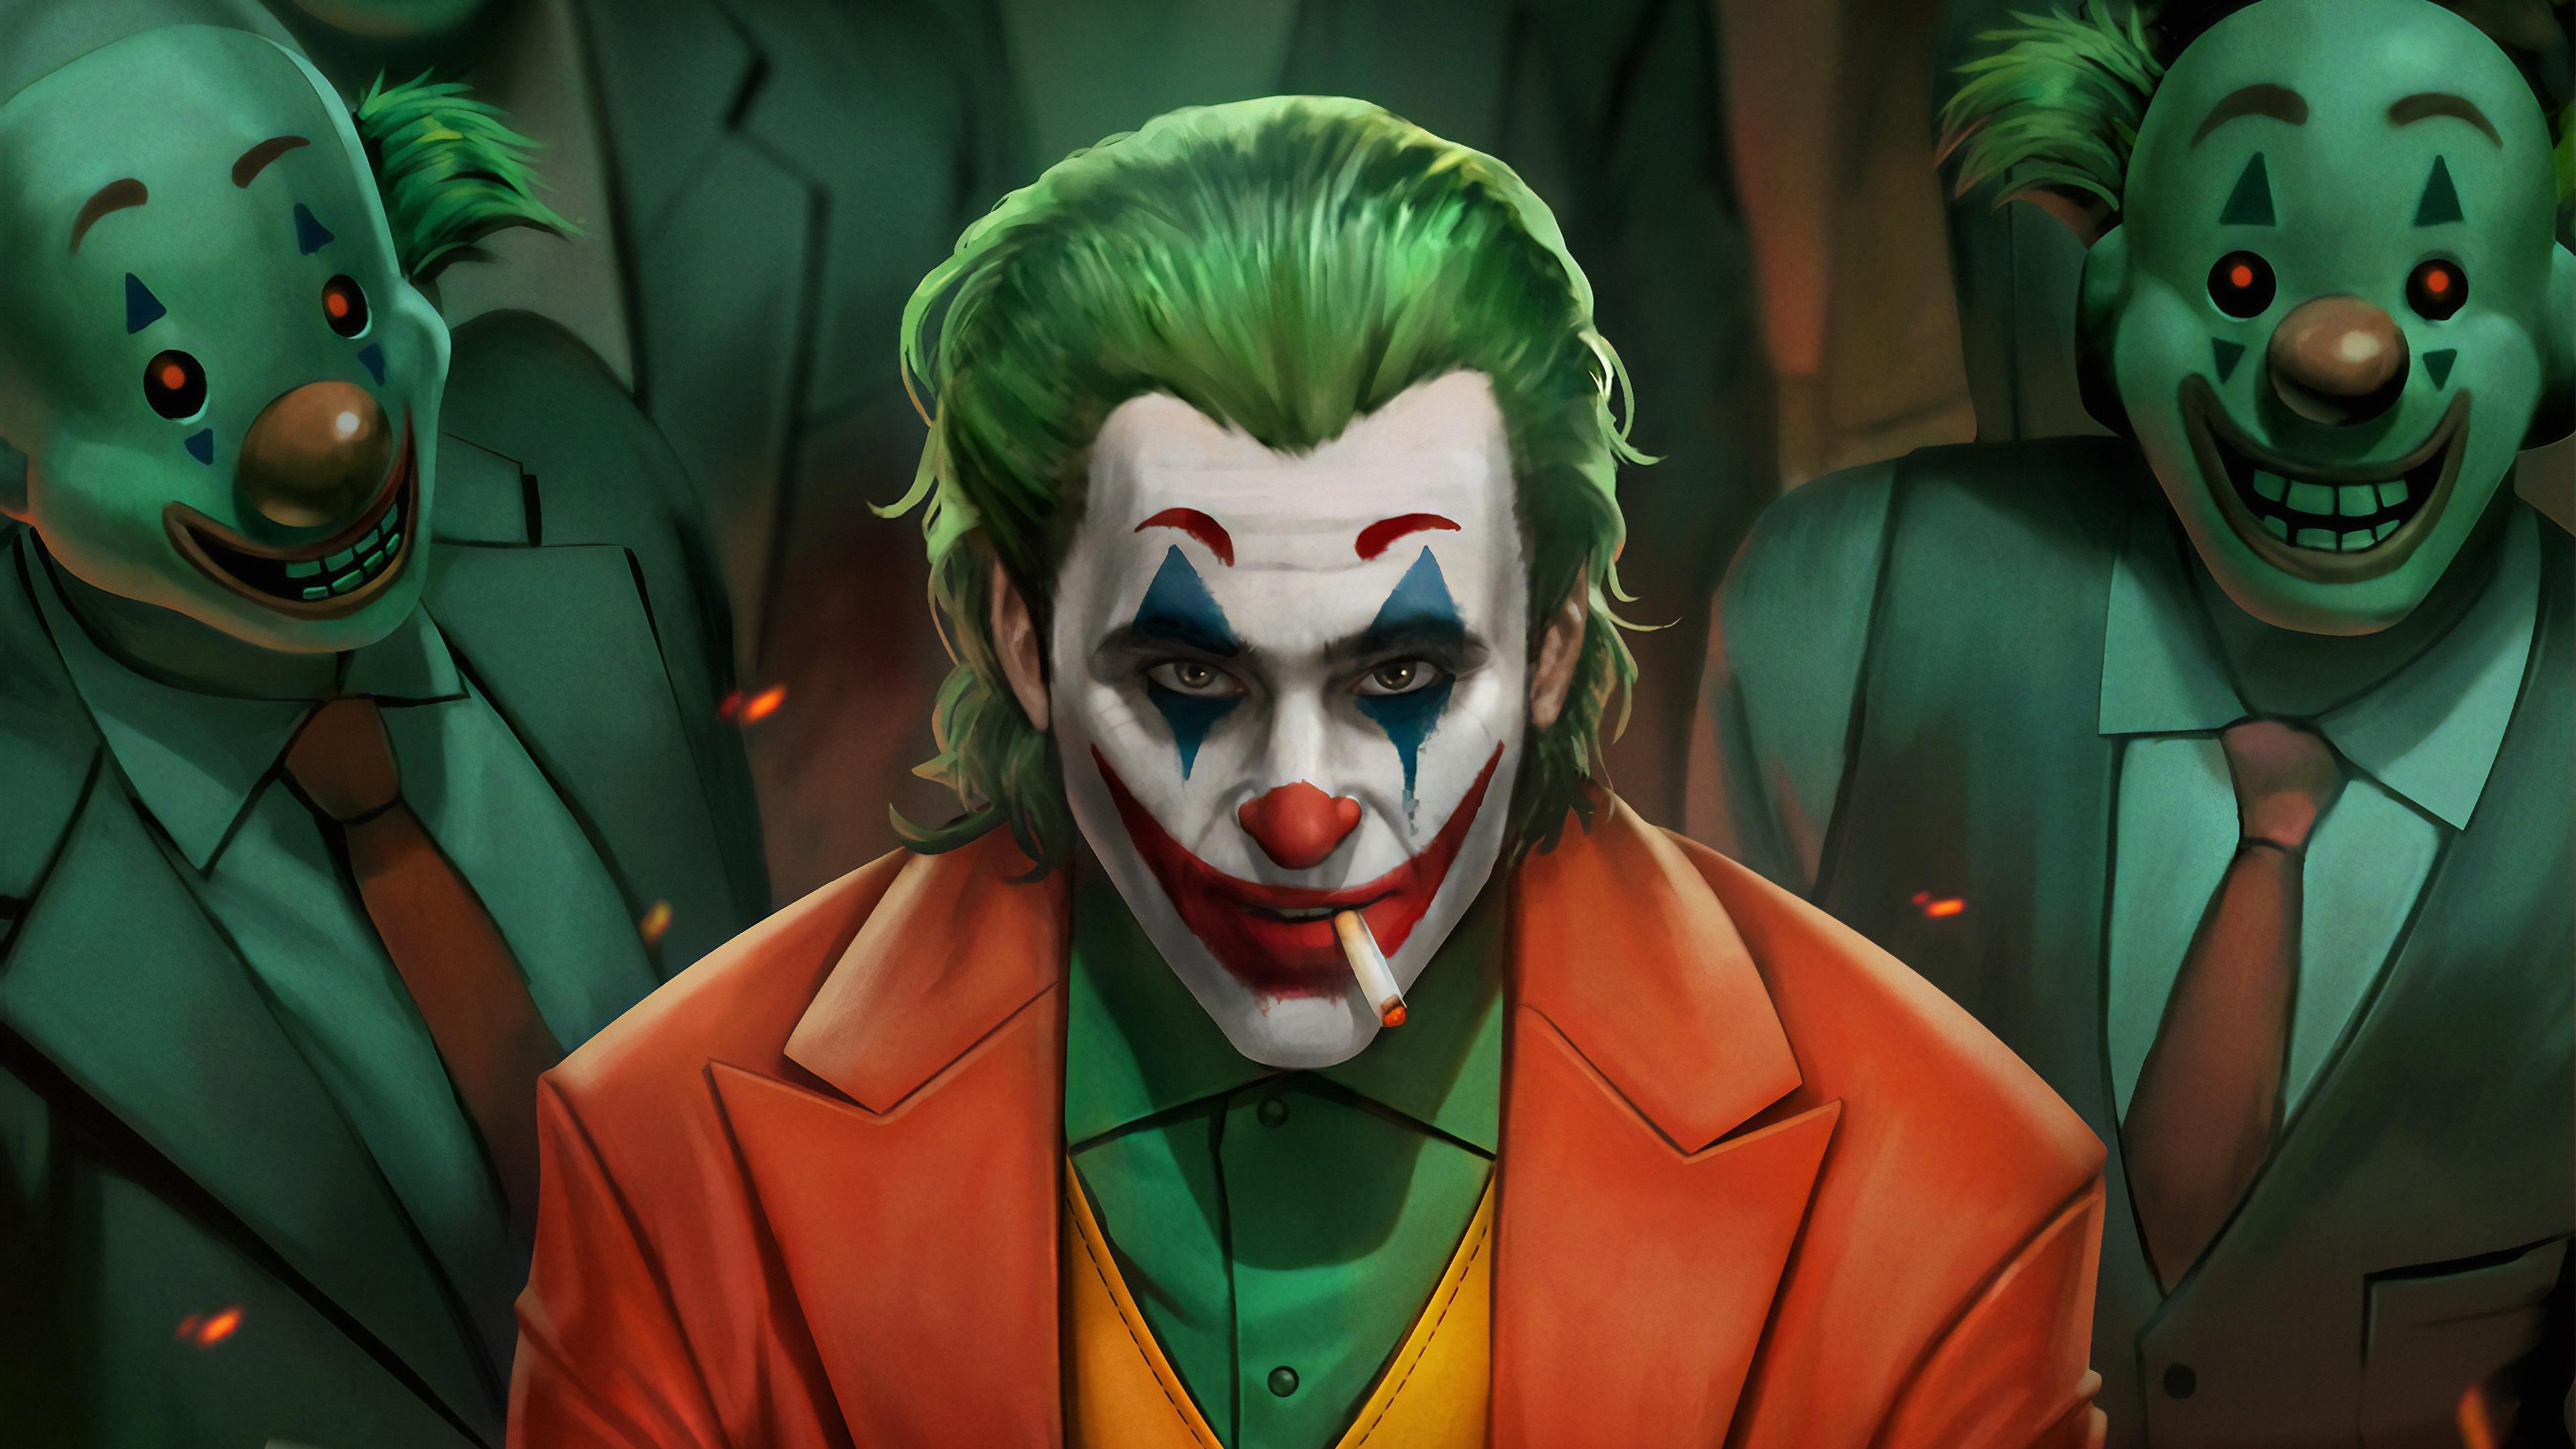 Wallpaper 4k Joker Movie Art 2019 movies wallpaper